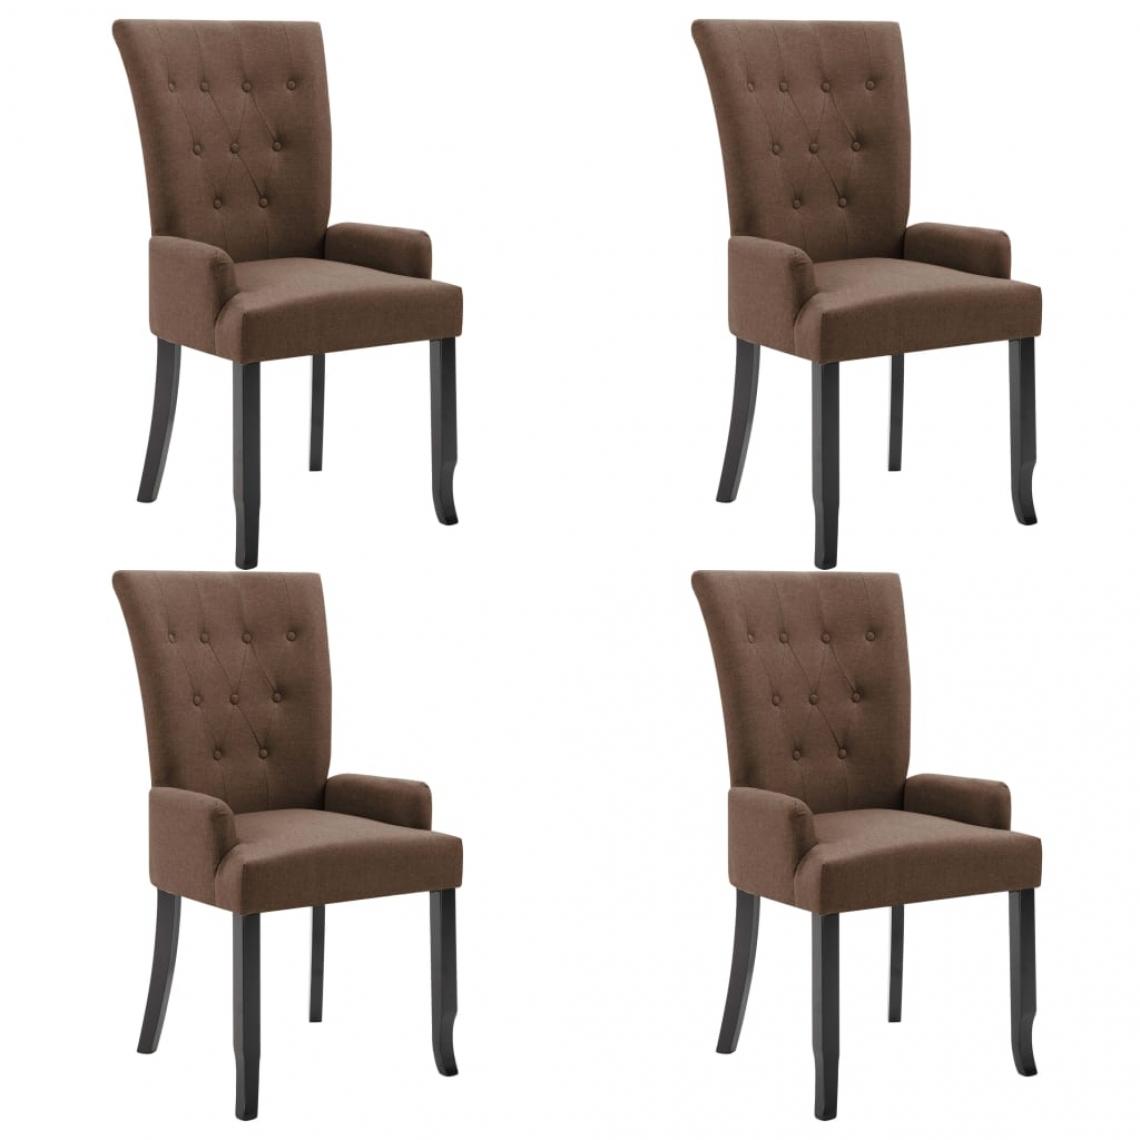 Decoshop26 - Lot de 4 chaises de salle à manger cuisine avec accoudoirs design moderne tissu marron CDS021209 - Chaises